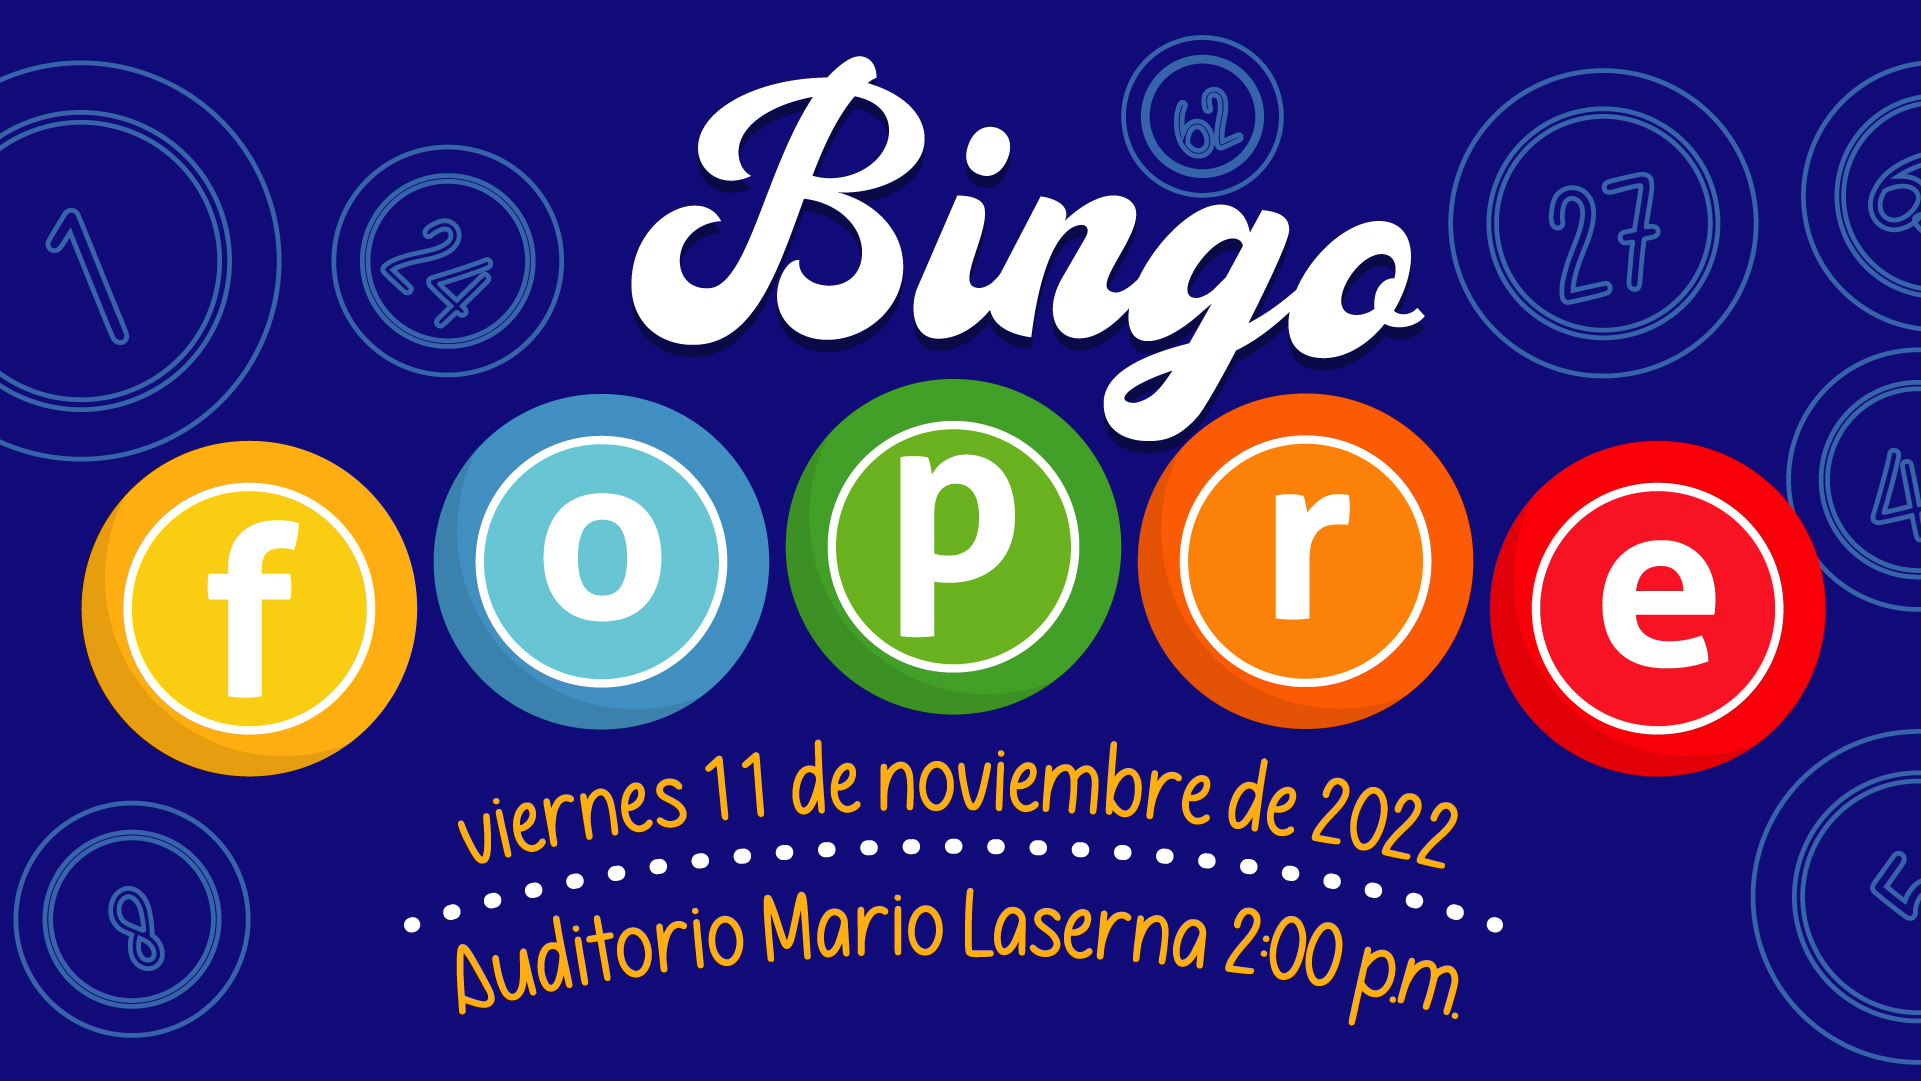 Este año, el Bingo FOPRE será un evento filantrópico inolvidable y divertido en el que la comunidad Uniandina podrá reunirse y participar de manera presencial o virtual